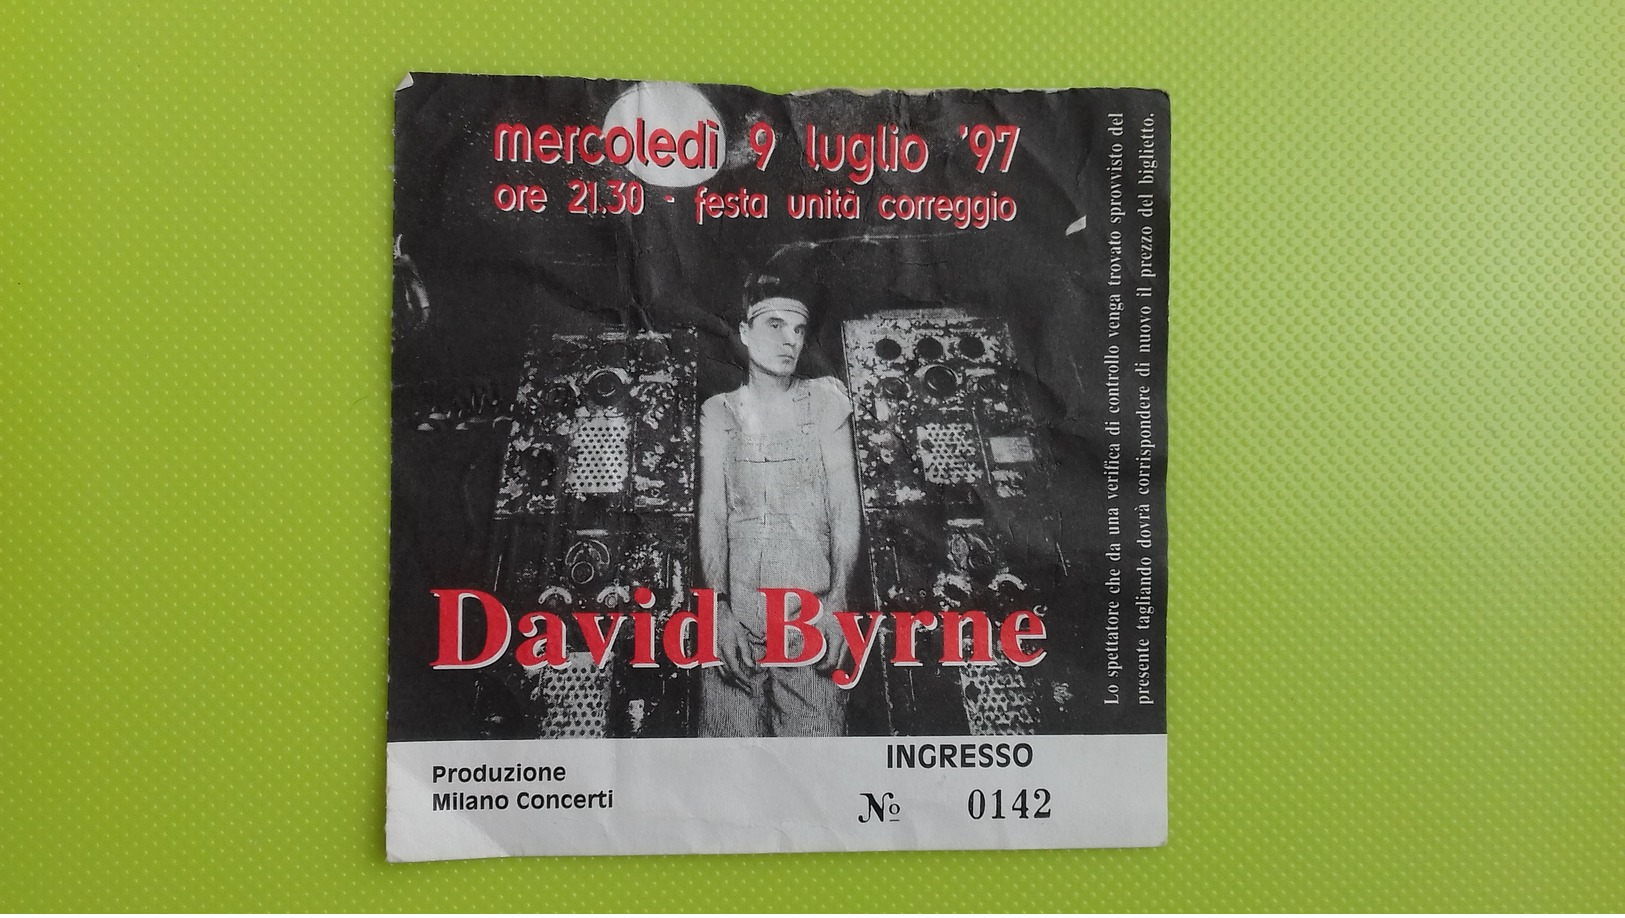 Biglietto Concerto DAVID BYRNE - Correggio (RE) - Mercoledi 9 Luglio 1997 - Tickets De Concerts